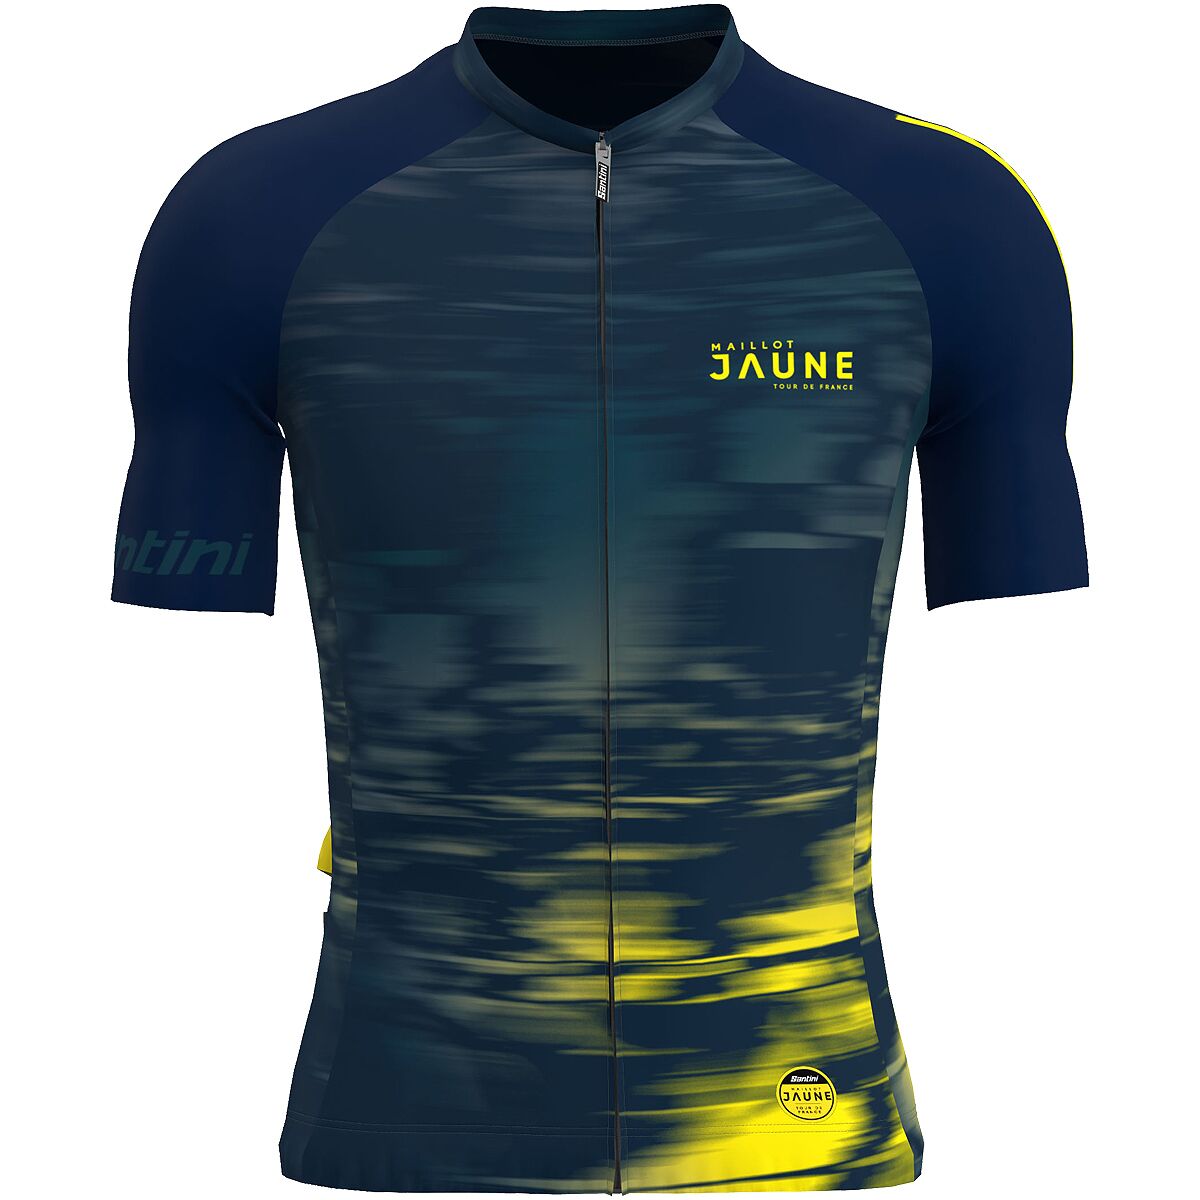 Santini Le Maillot Jaune Espirit Cycling Jersey - Men's